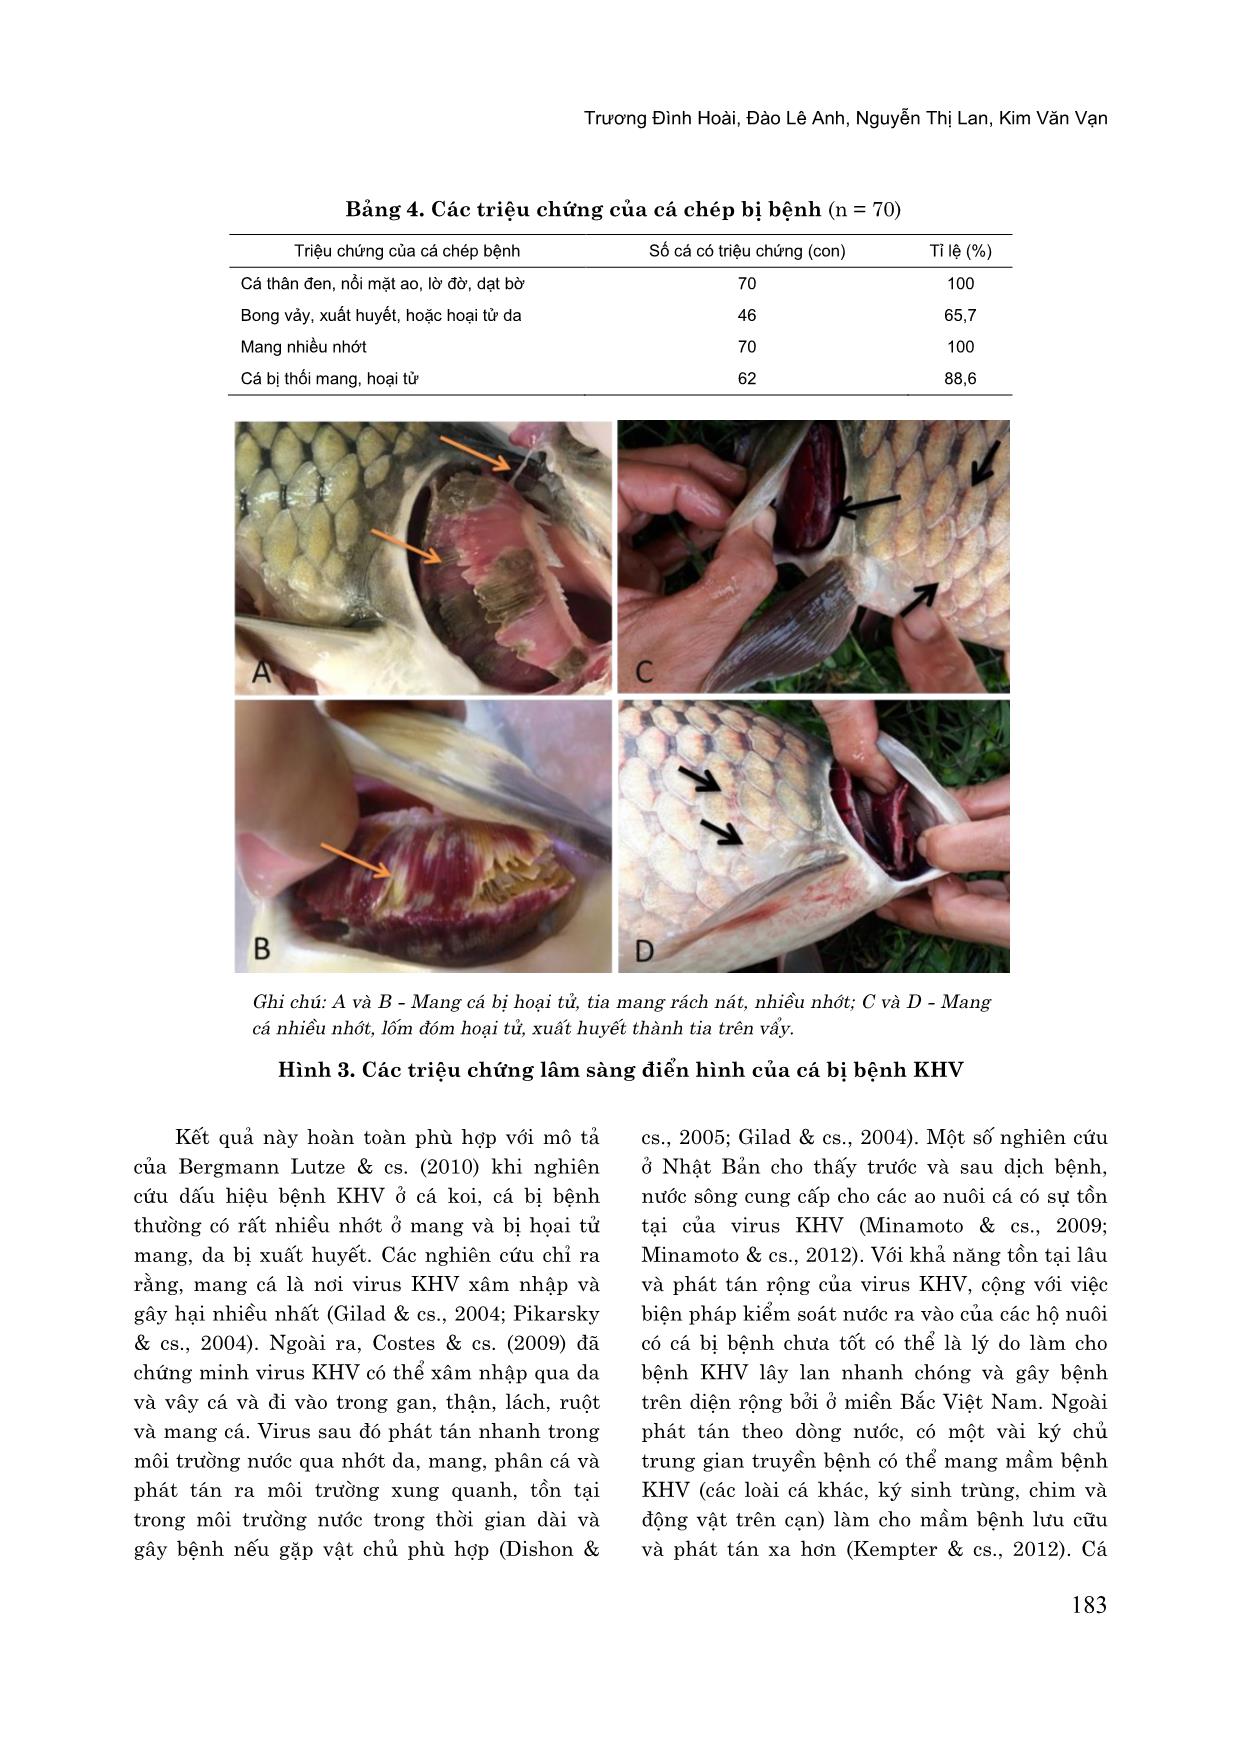 Một số đặc điểm dịch tễ, bệnh lý và chẩn đoán bệnh koi herpes virus (KHV) trên cá chép nuôi tại miền Bắc Việt Nam trang 6